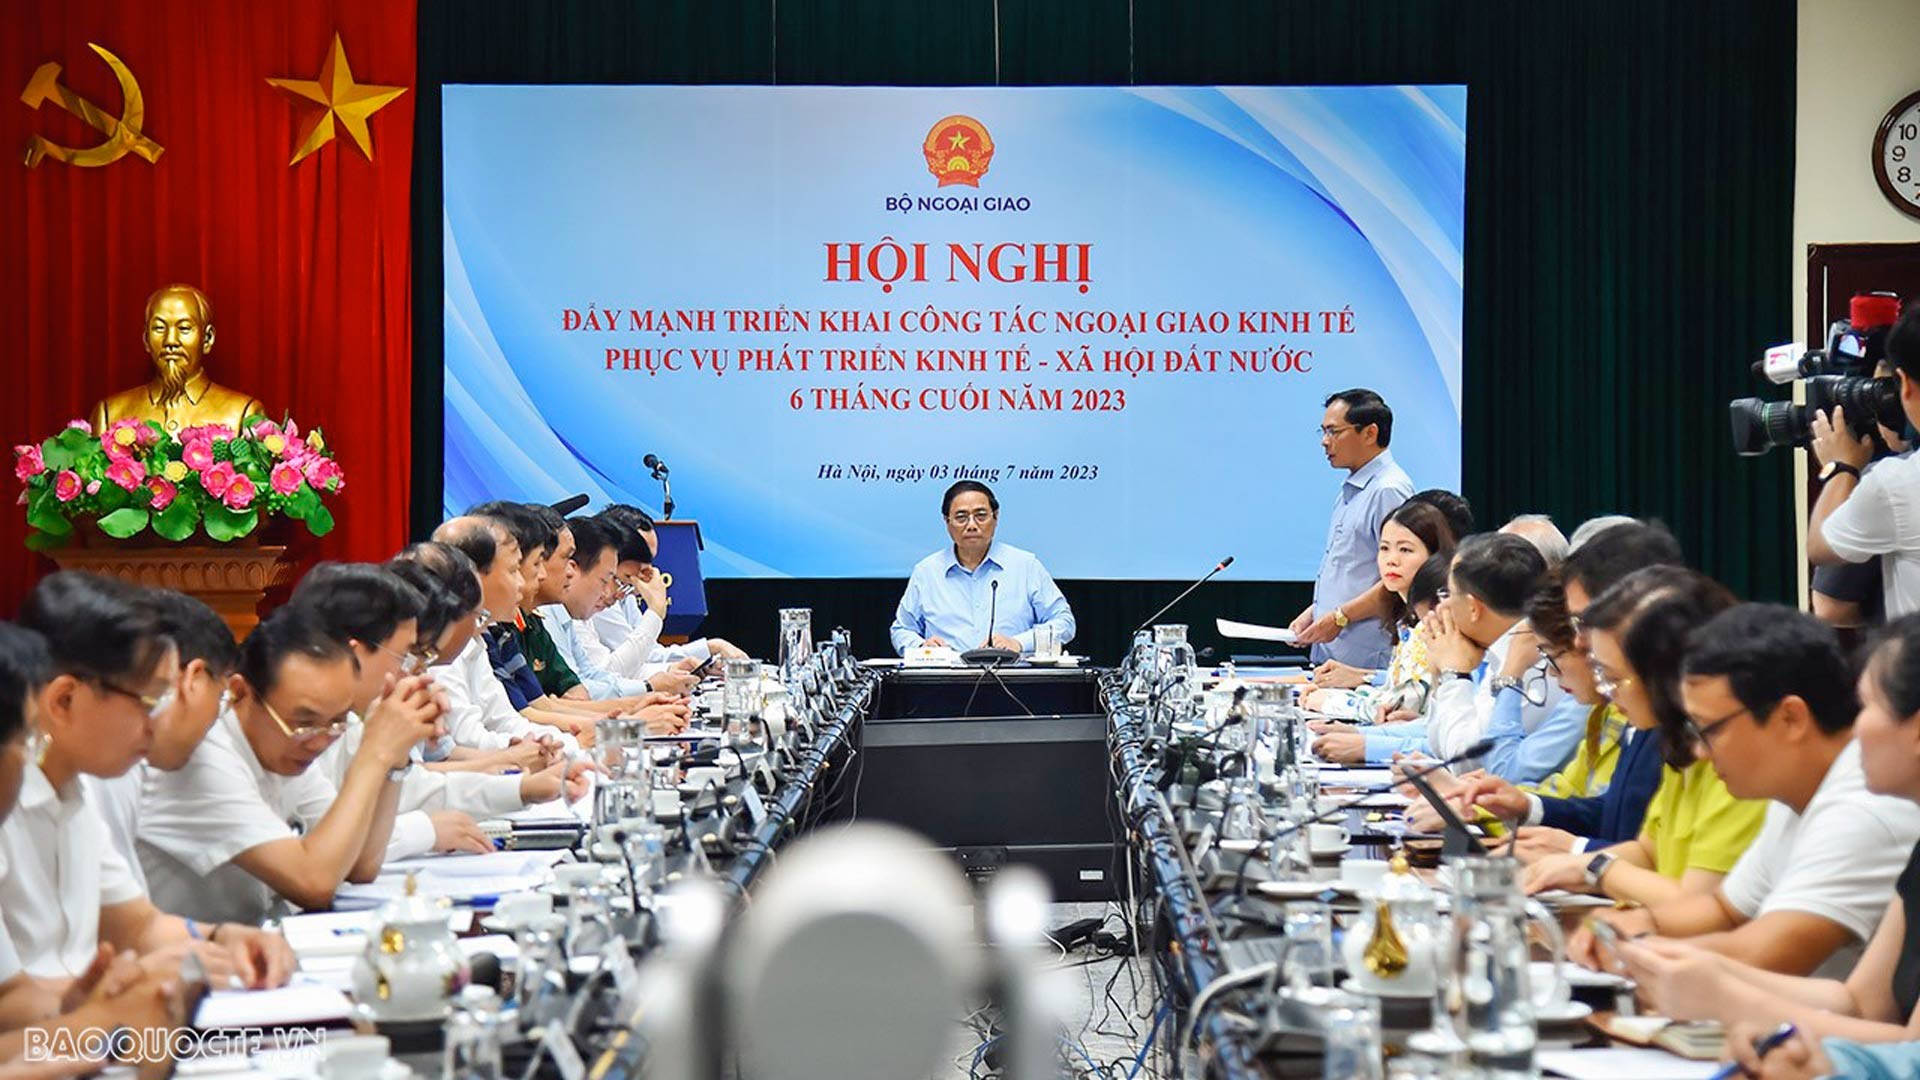 Bộ trưởng Ngoại giao Bùi Thanh Sơn phát biểu dẫn đề tại Hội nghị đẩy mạnh triển khai công tác ngoại giao kinh tế phục vụ phát triển kinh tế - xã hội đất nước 6 tháng cuối năm 2023 tại Hà Nội, ngày 3/7/2023.